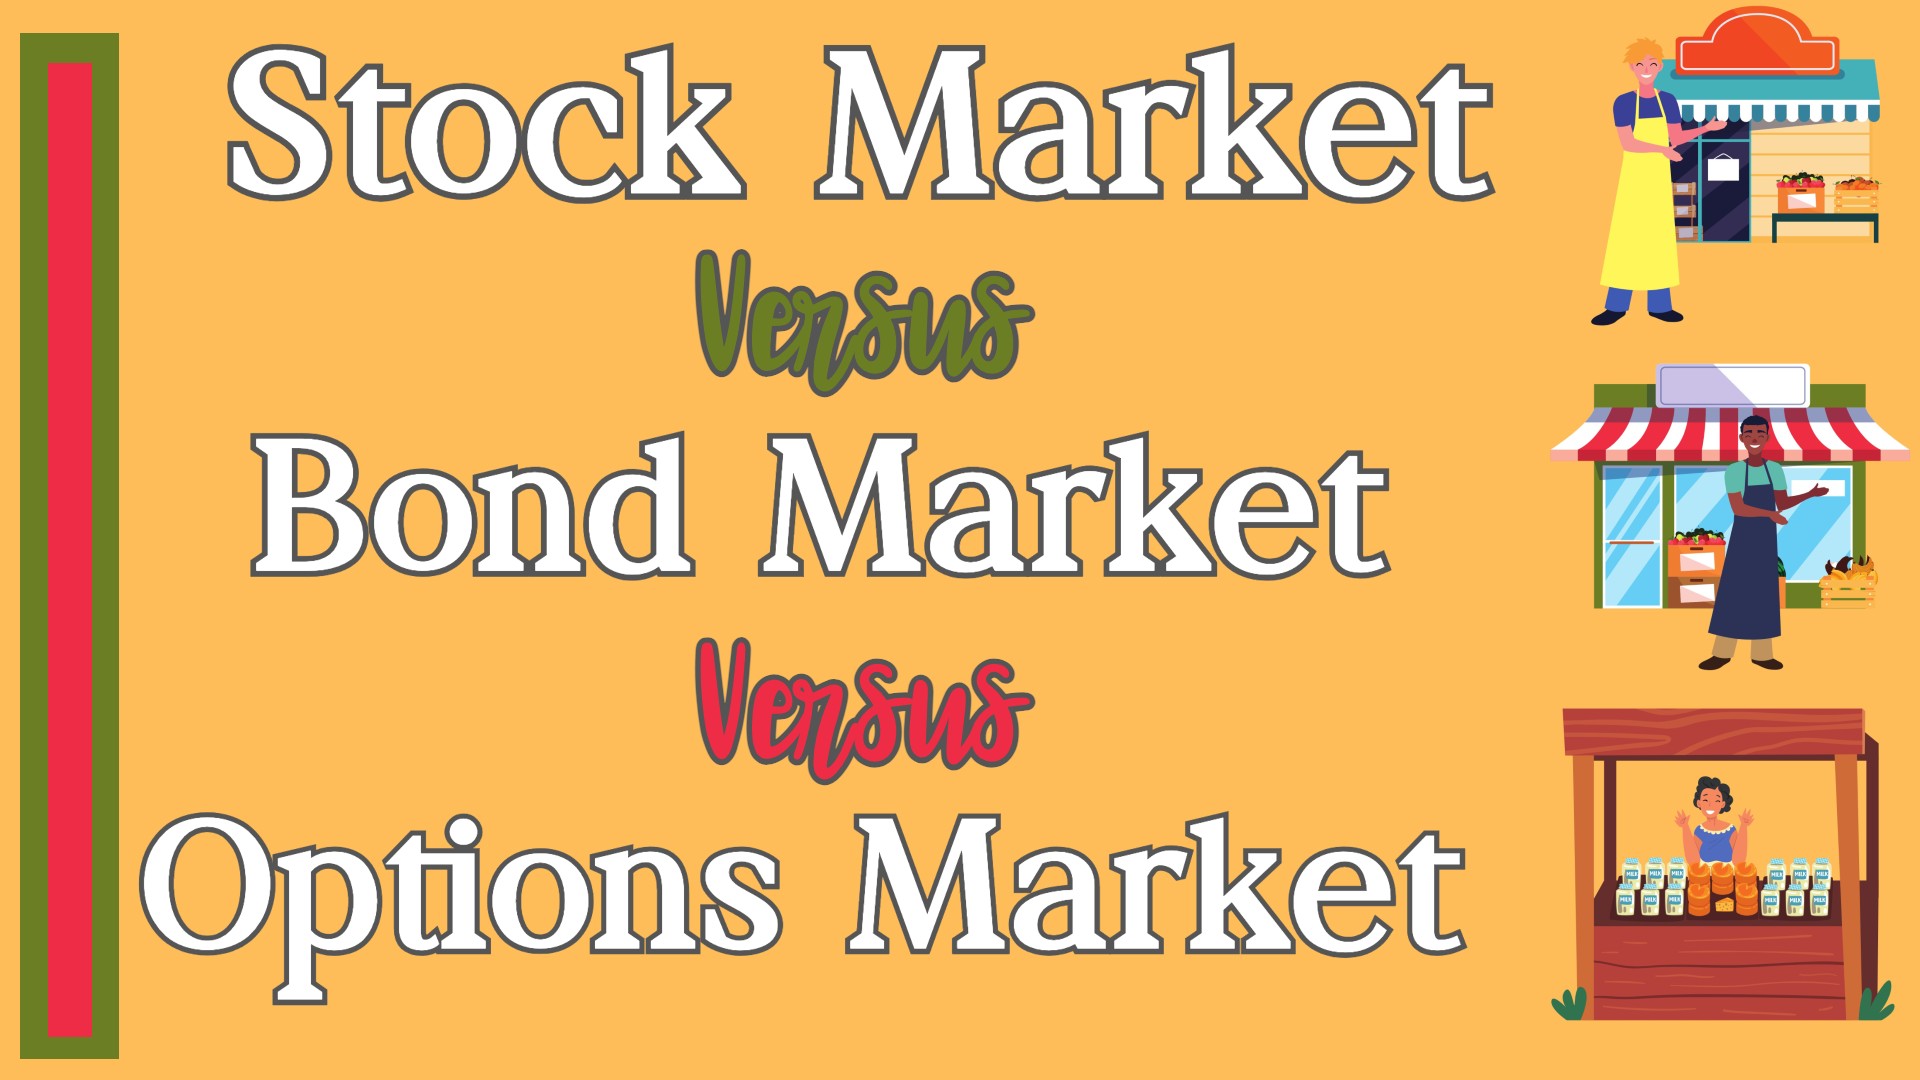 Stock Market vs. Bond Market vs. Options Market